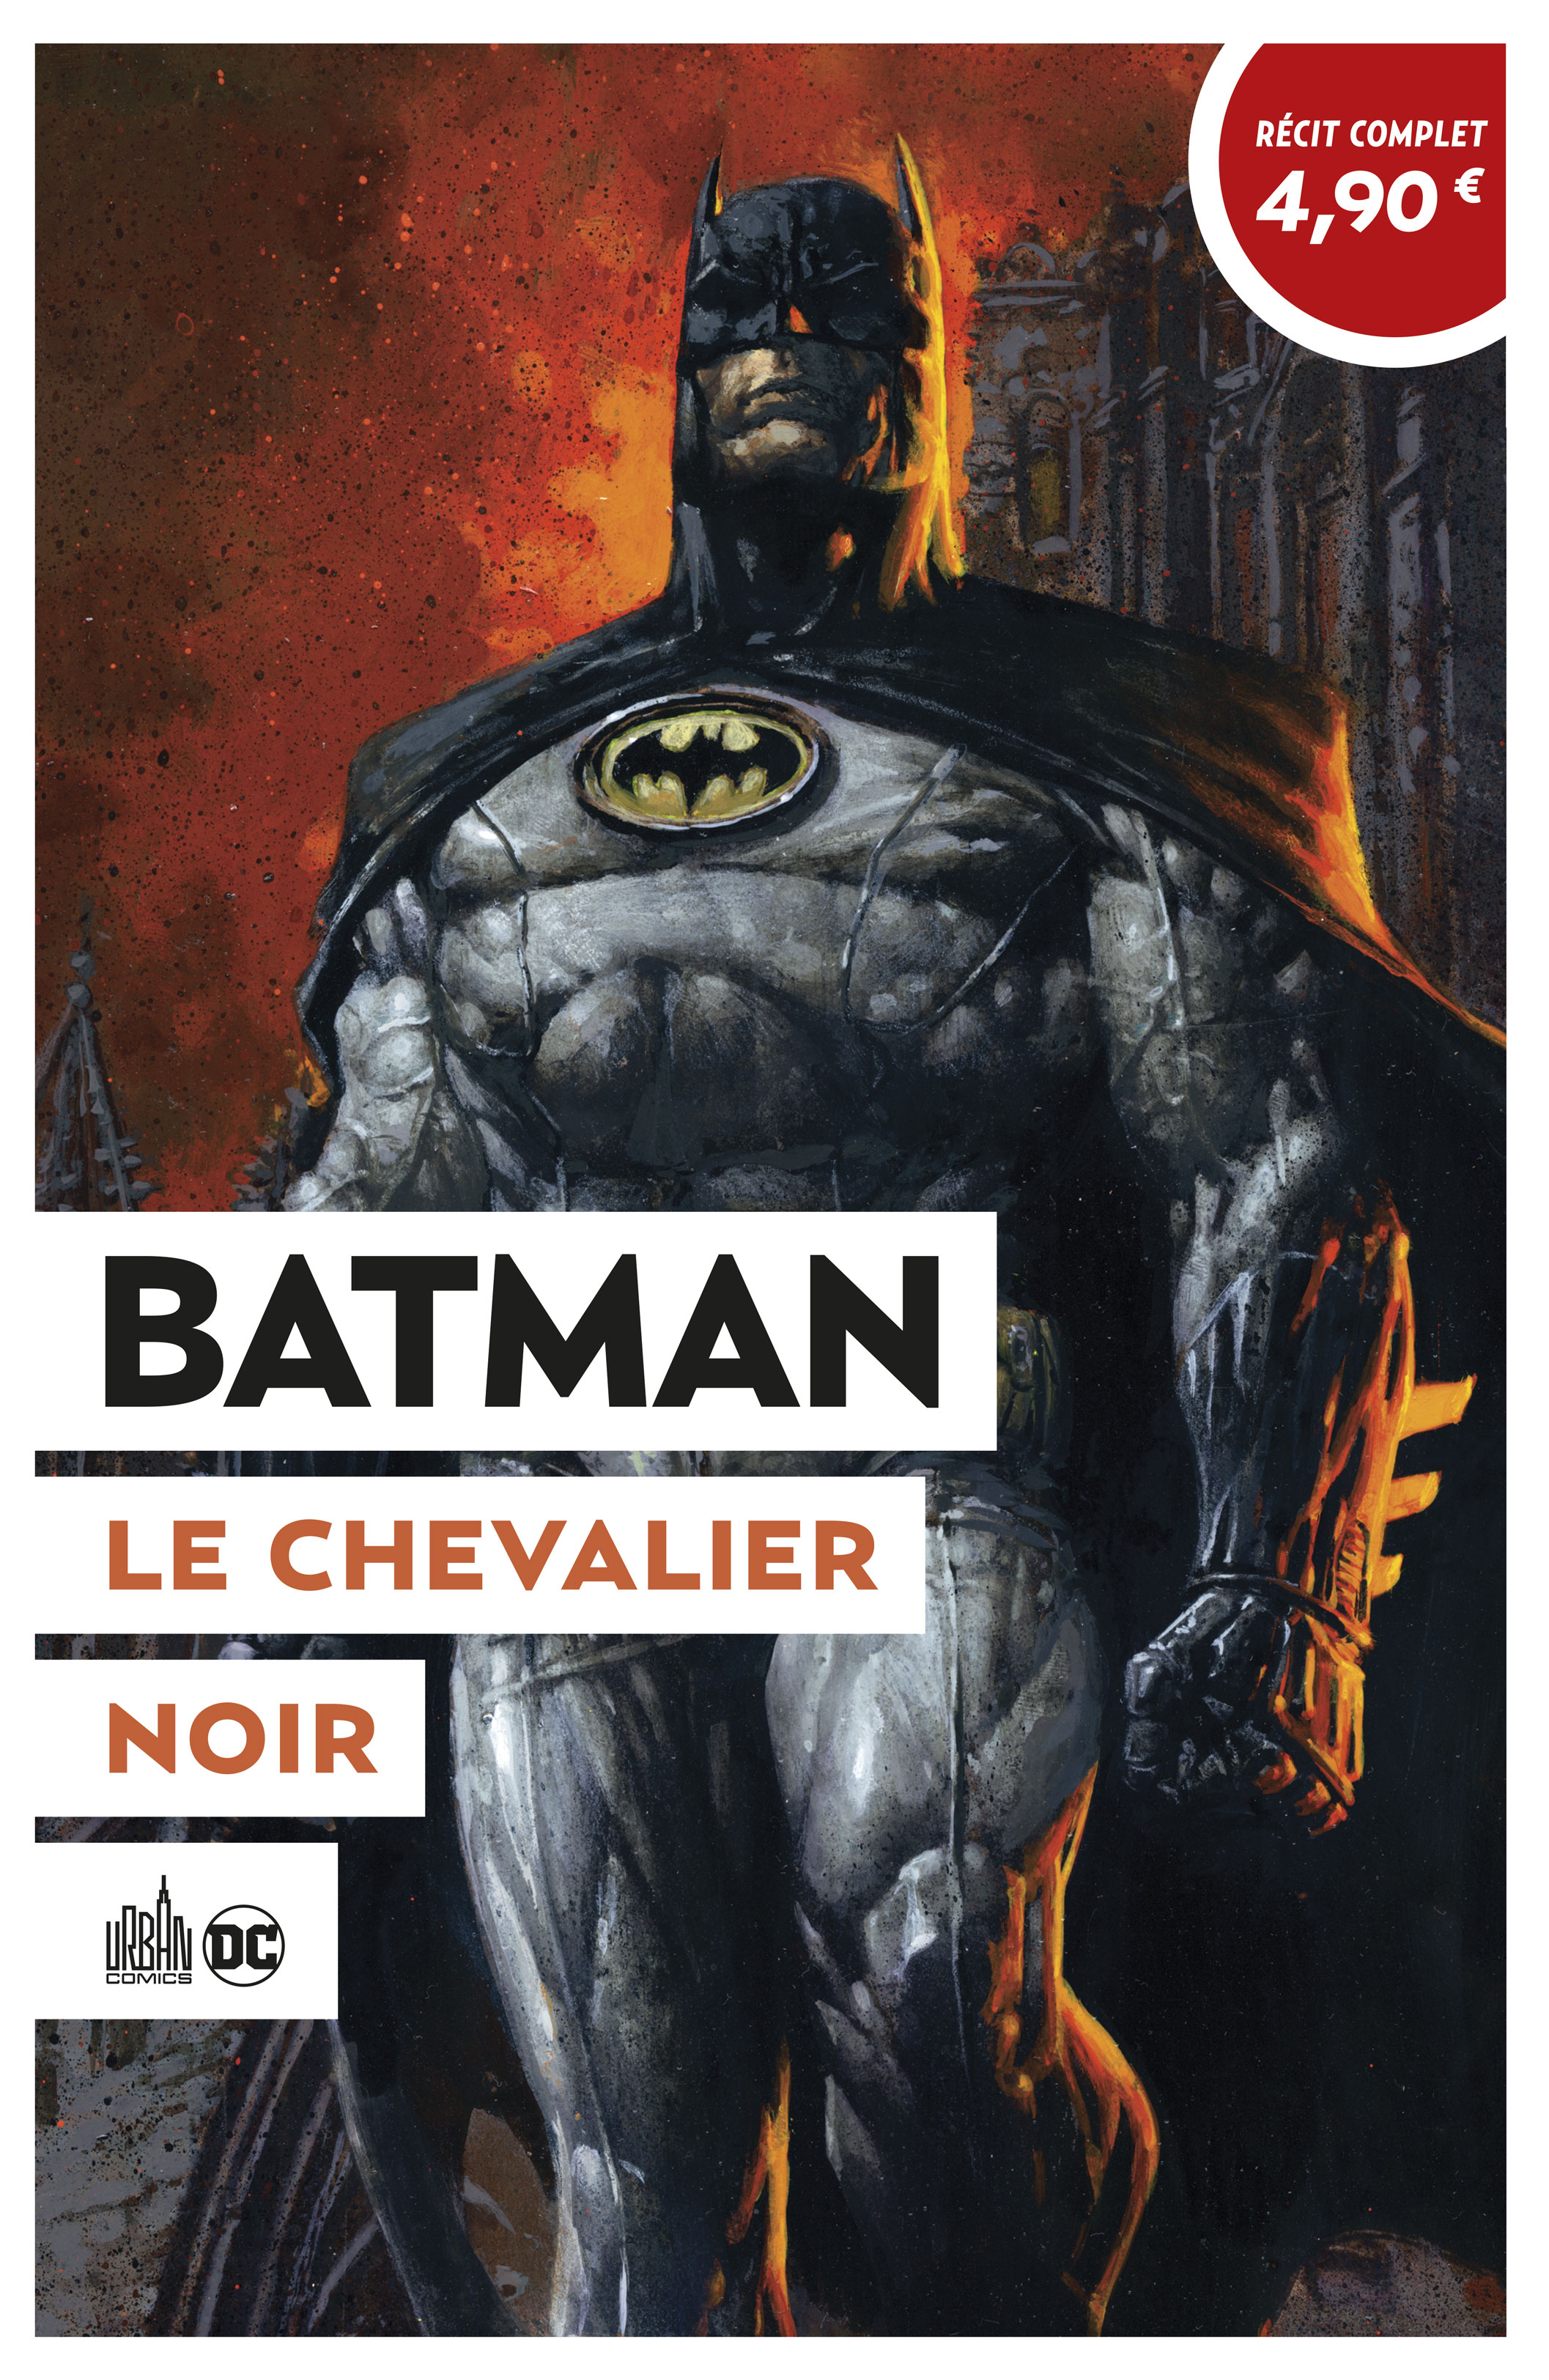 OPÉRATION ÉTÉ 2020 – Tome 9 – Batman Le Chevalier Noir - couv